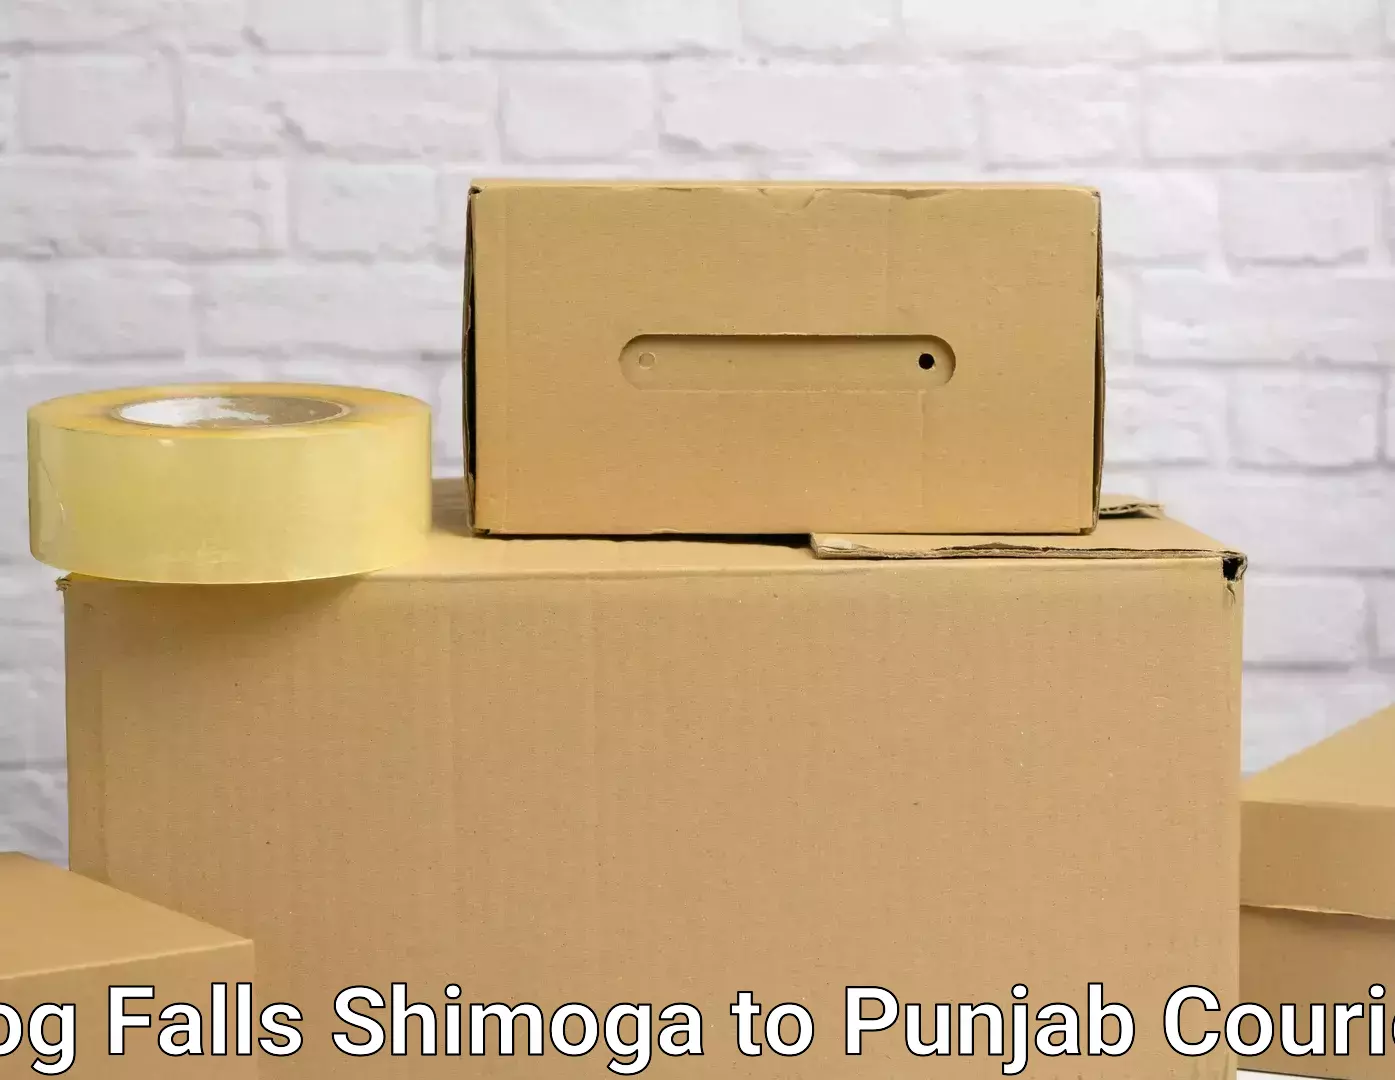 Moving and packing experts Jog Falls Shimoga to Central University of Punjab Bathinda